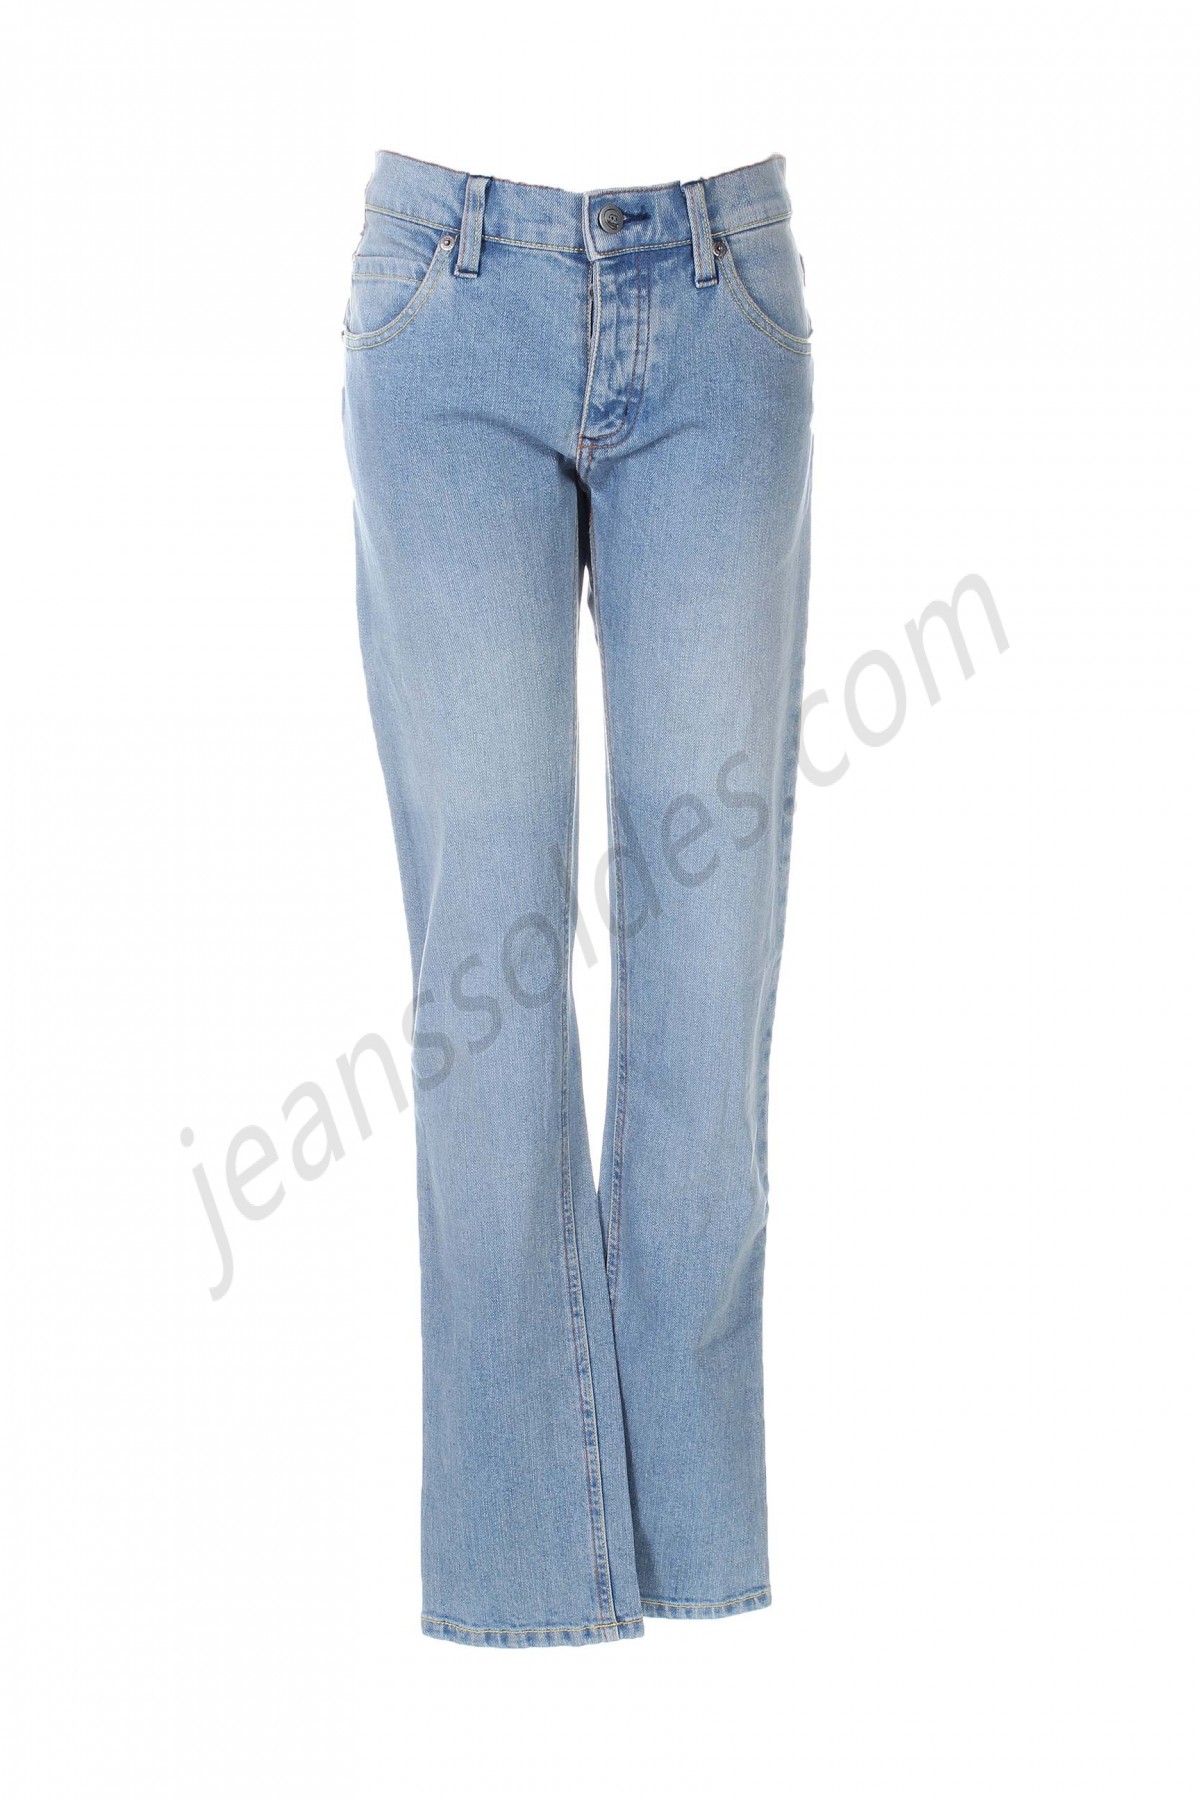 cheap monday-Jeans coupe slim prix d’amis - -0